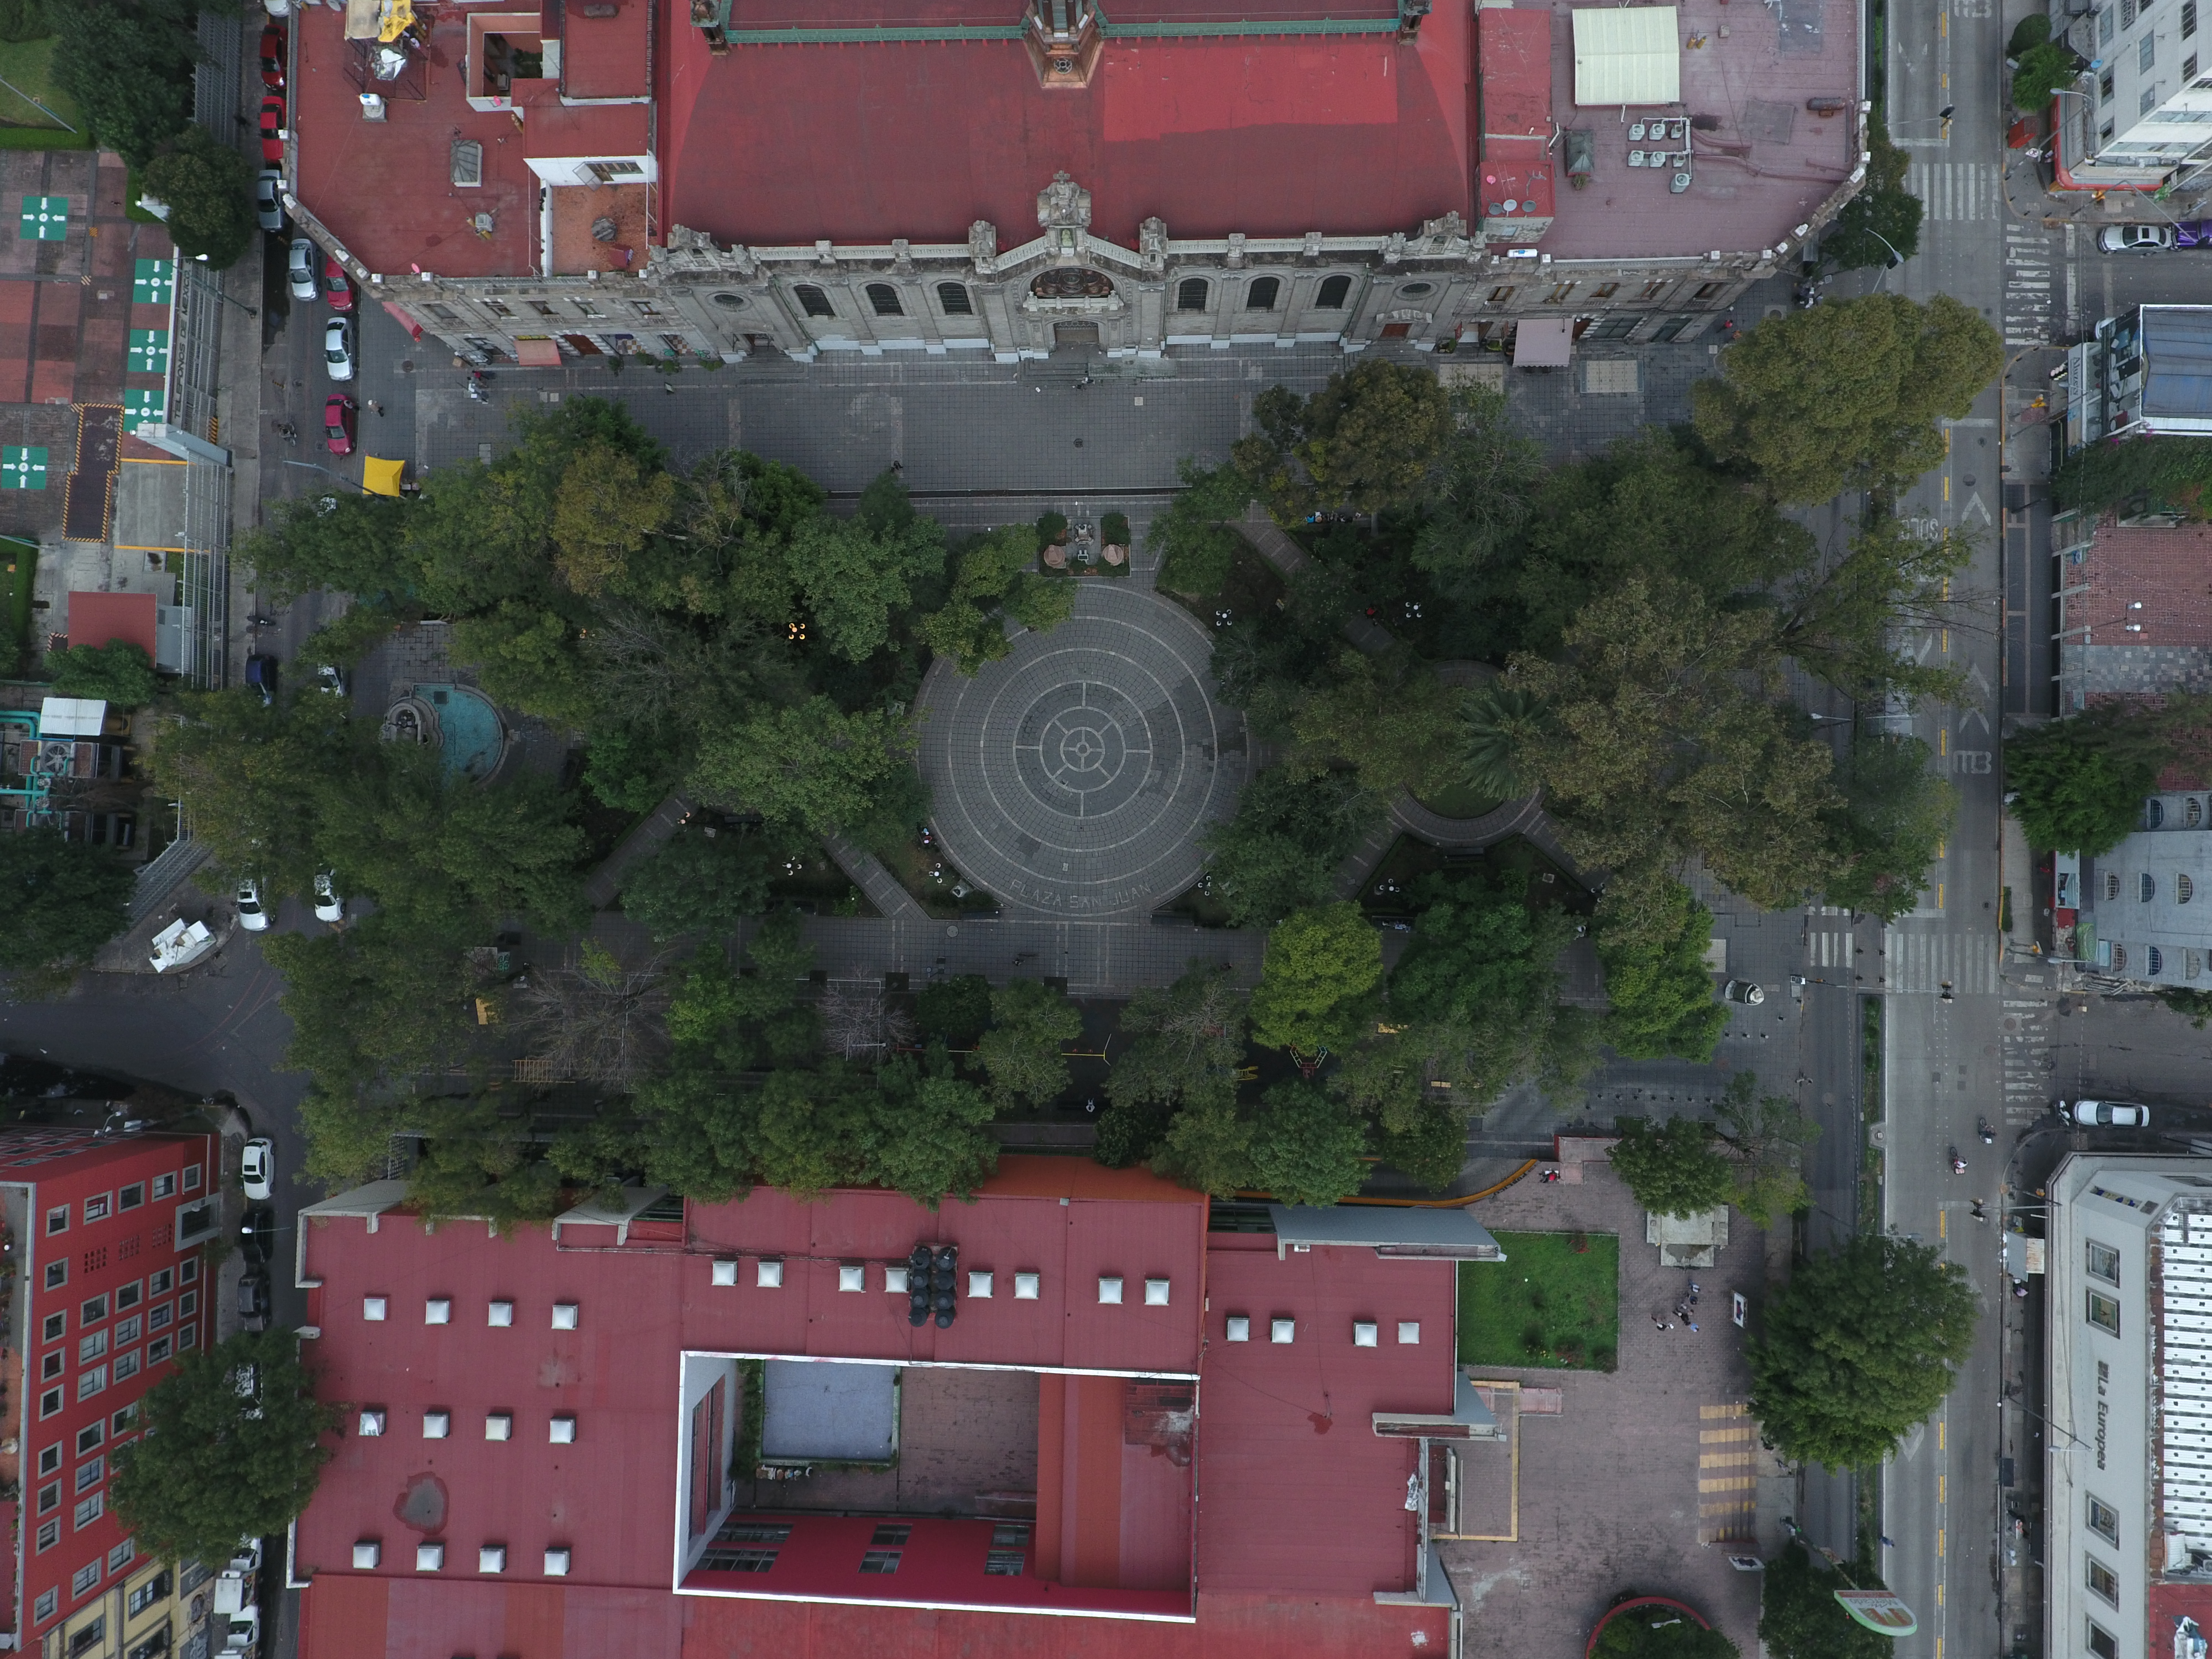 Se muestra la vista aérea de un Espacio Público, en la que se aprecia la distribución y composición de las áreas verdes.